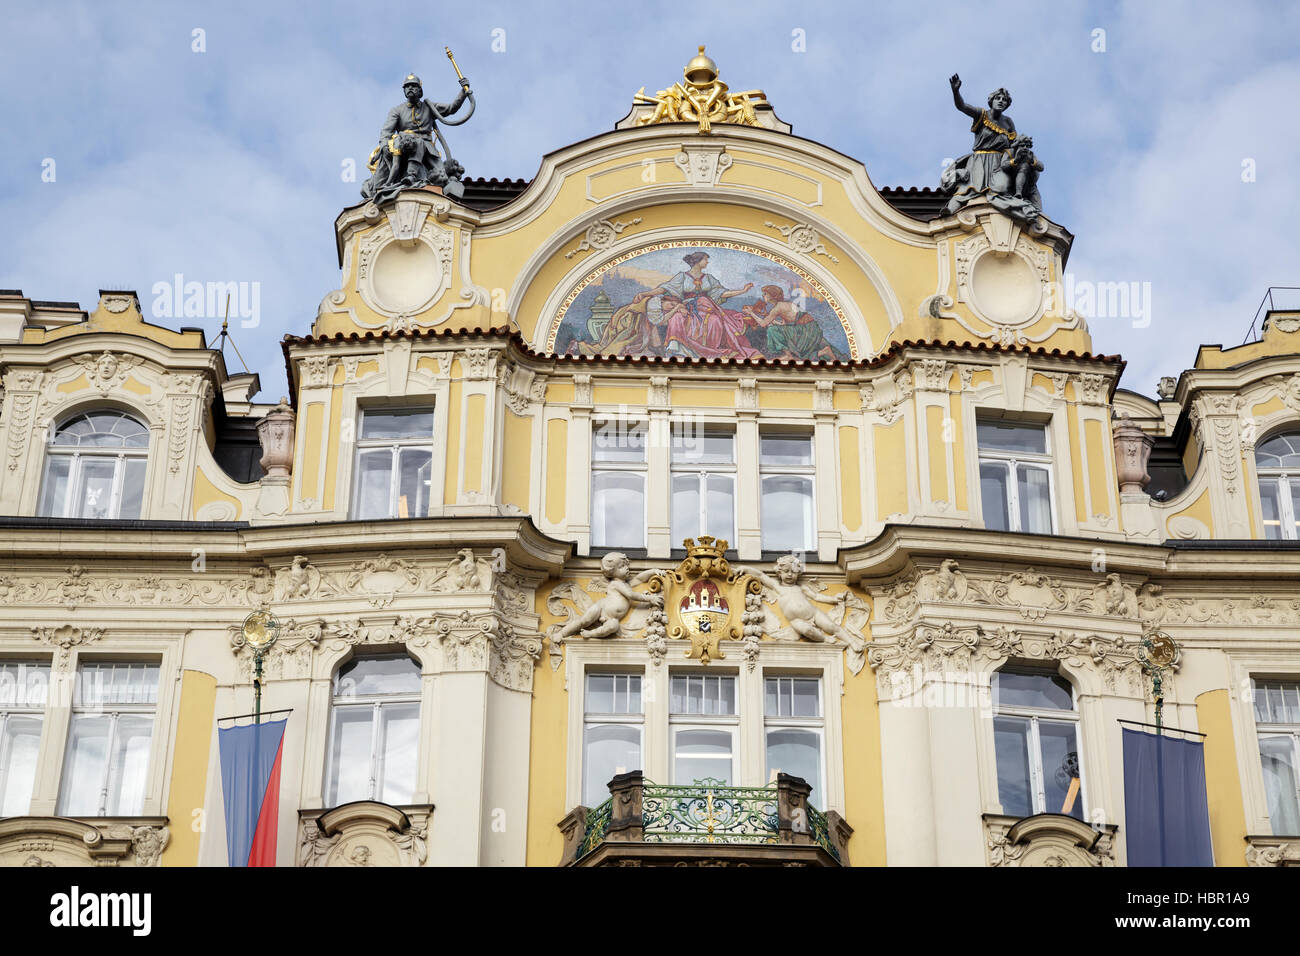 Ministerium für lokale Entwicklung aufbauend auf dem Altstädter Ring – Jugendstil-Gebäude im Jahr 1898 entworfen von Architekt Osvald Polivka, Prag, Tschechische Repub- Stockfoto